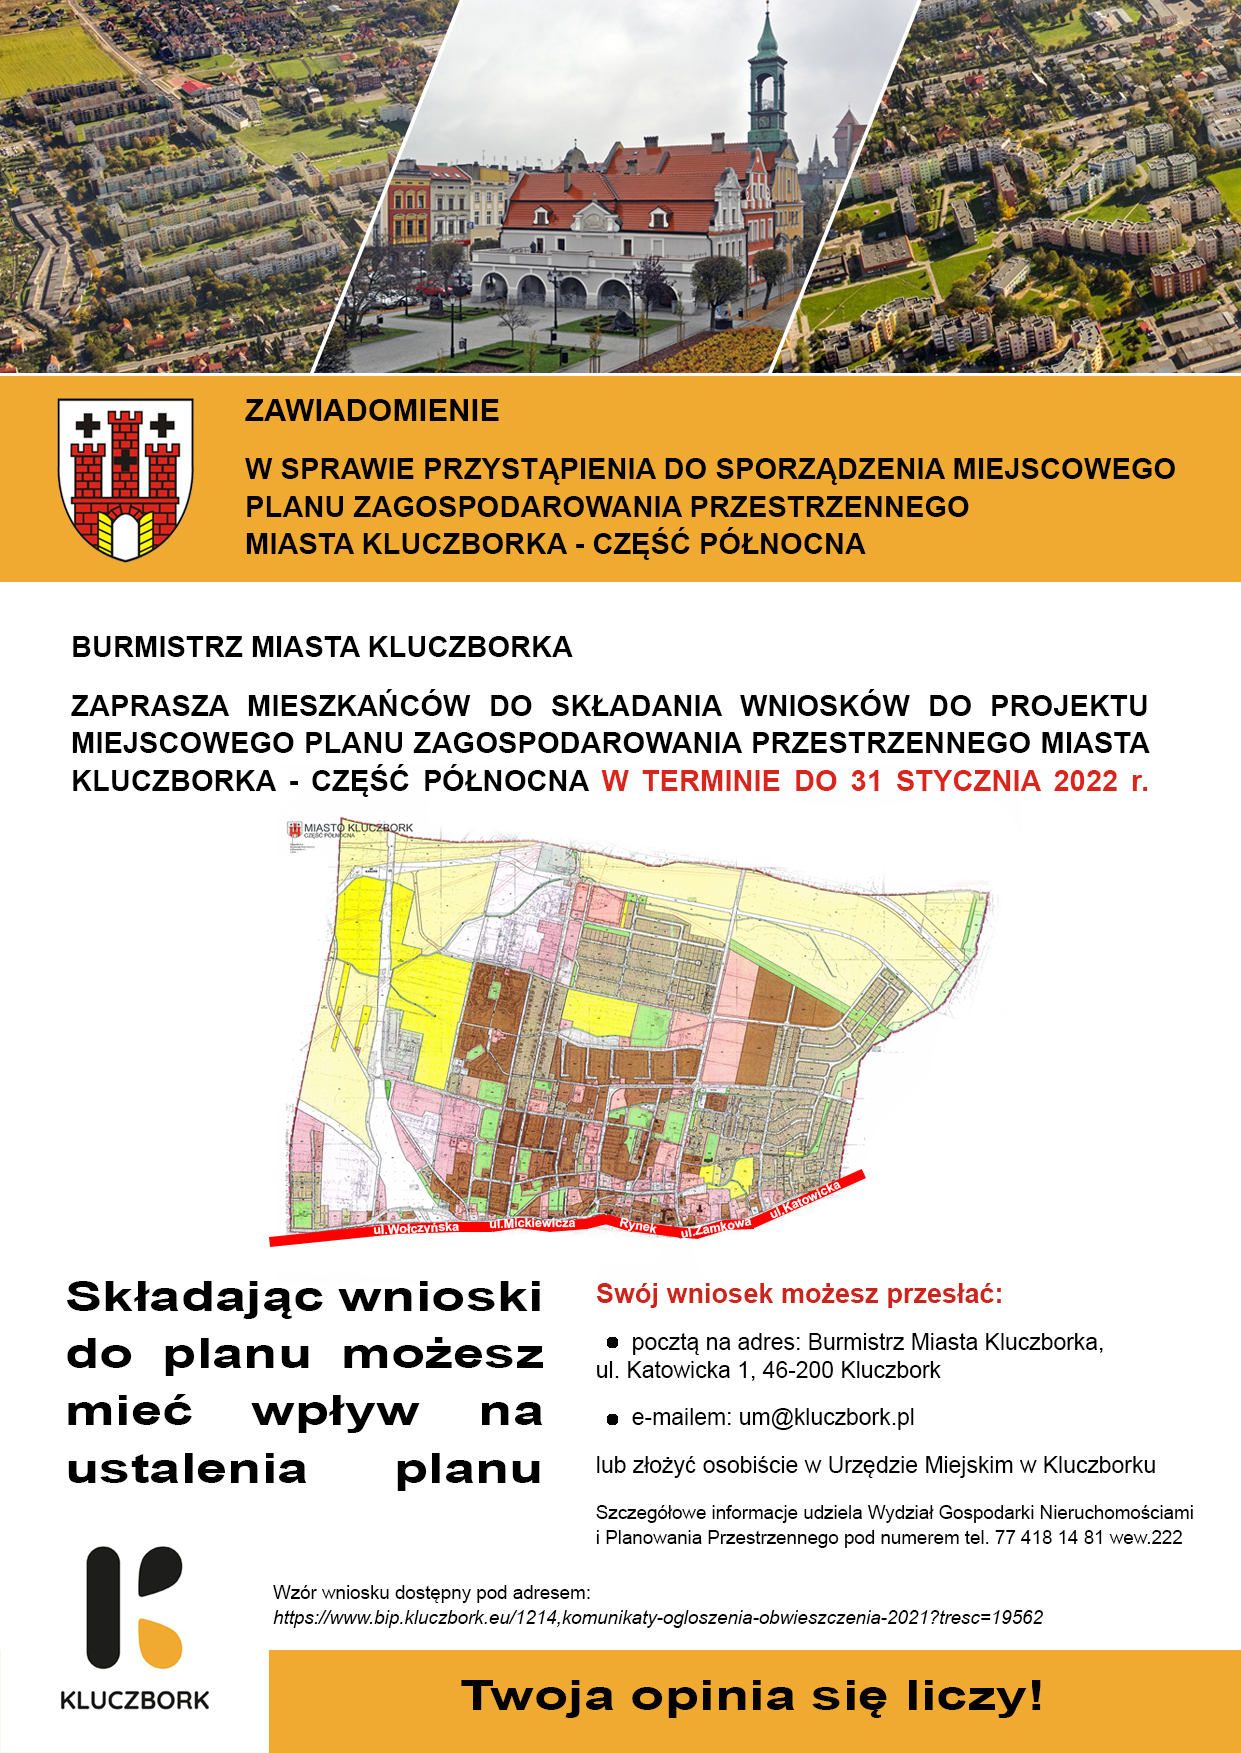 Zawiadomienie w sprawie przystąpienia do sporządzenia miejscowego planu zagospodarowania przestrzennego miasta Kluczborka - część północna